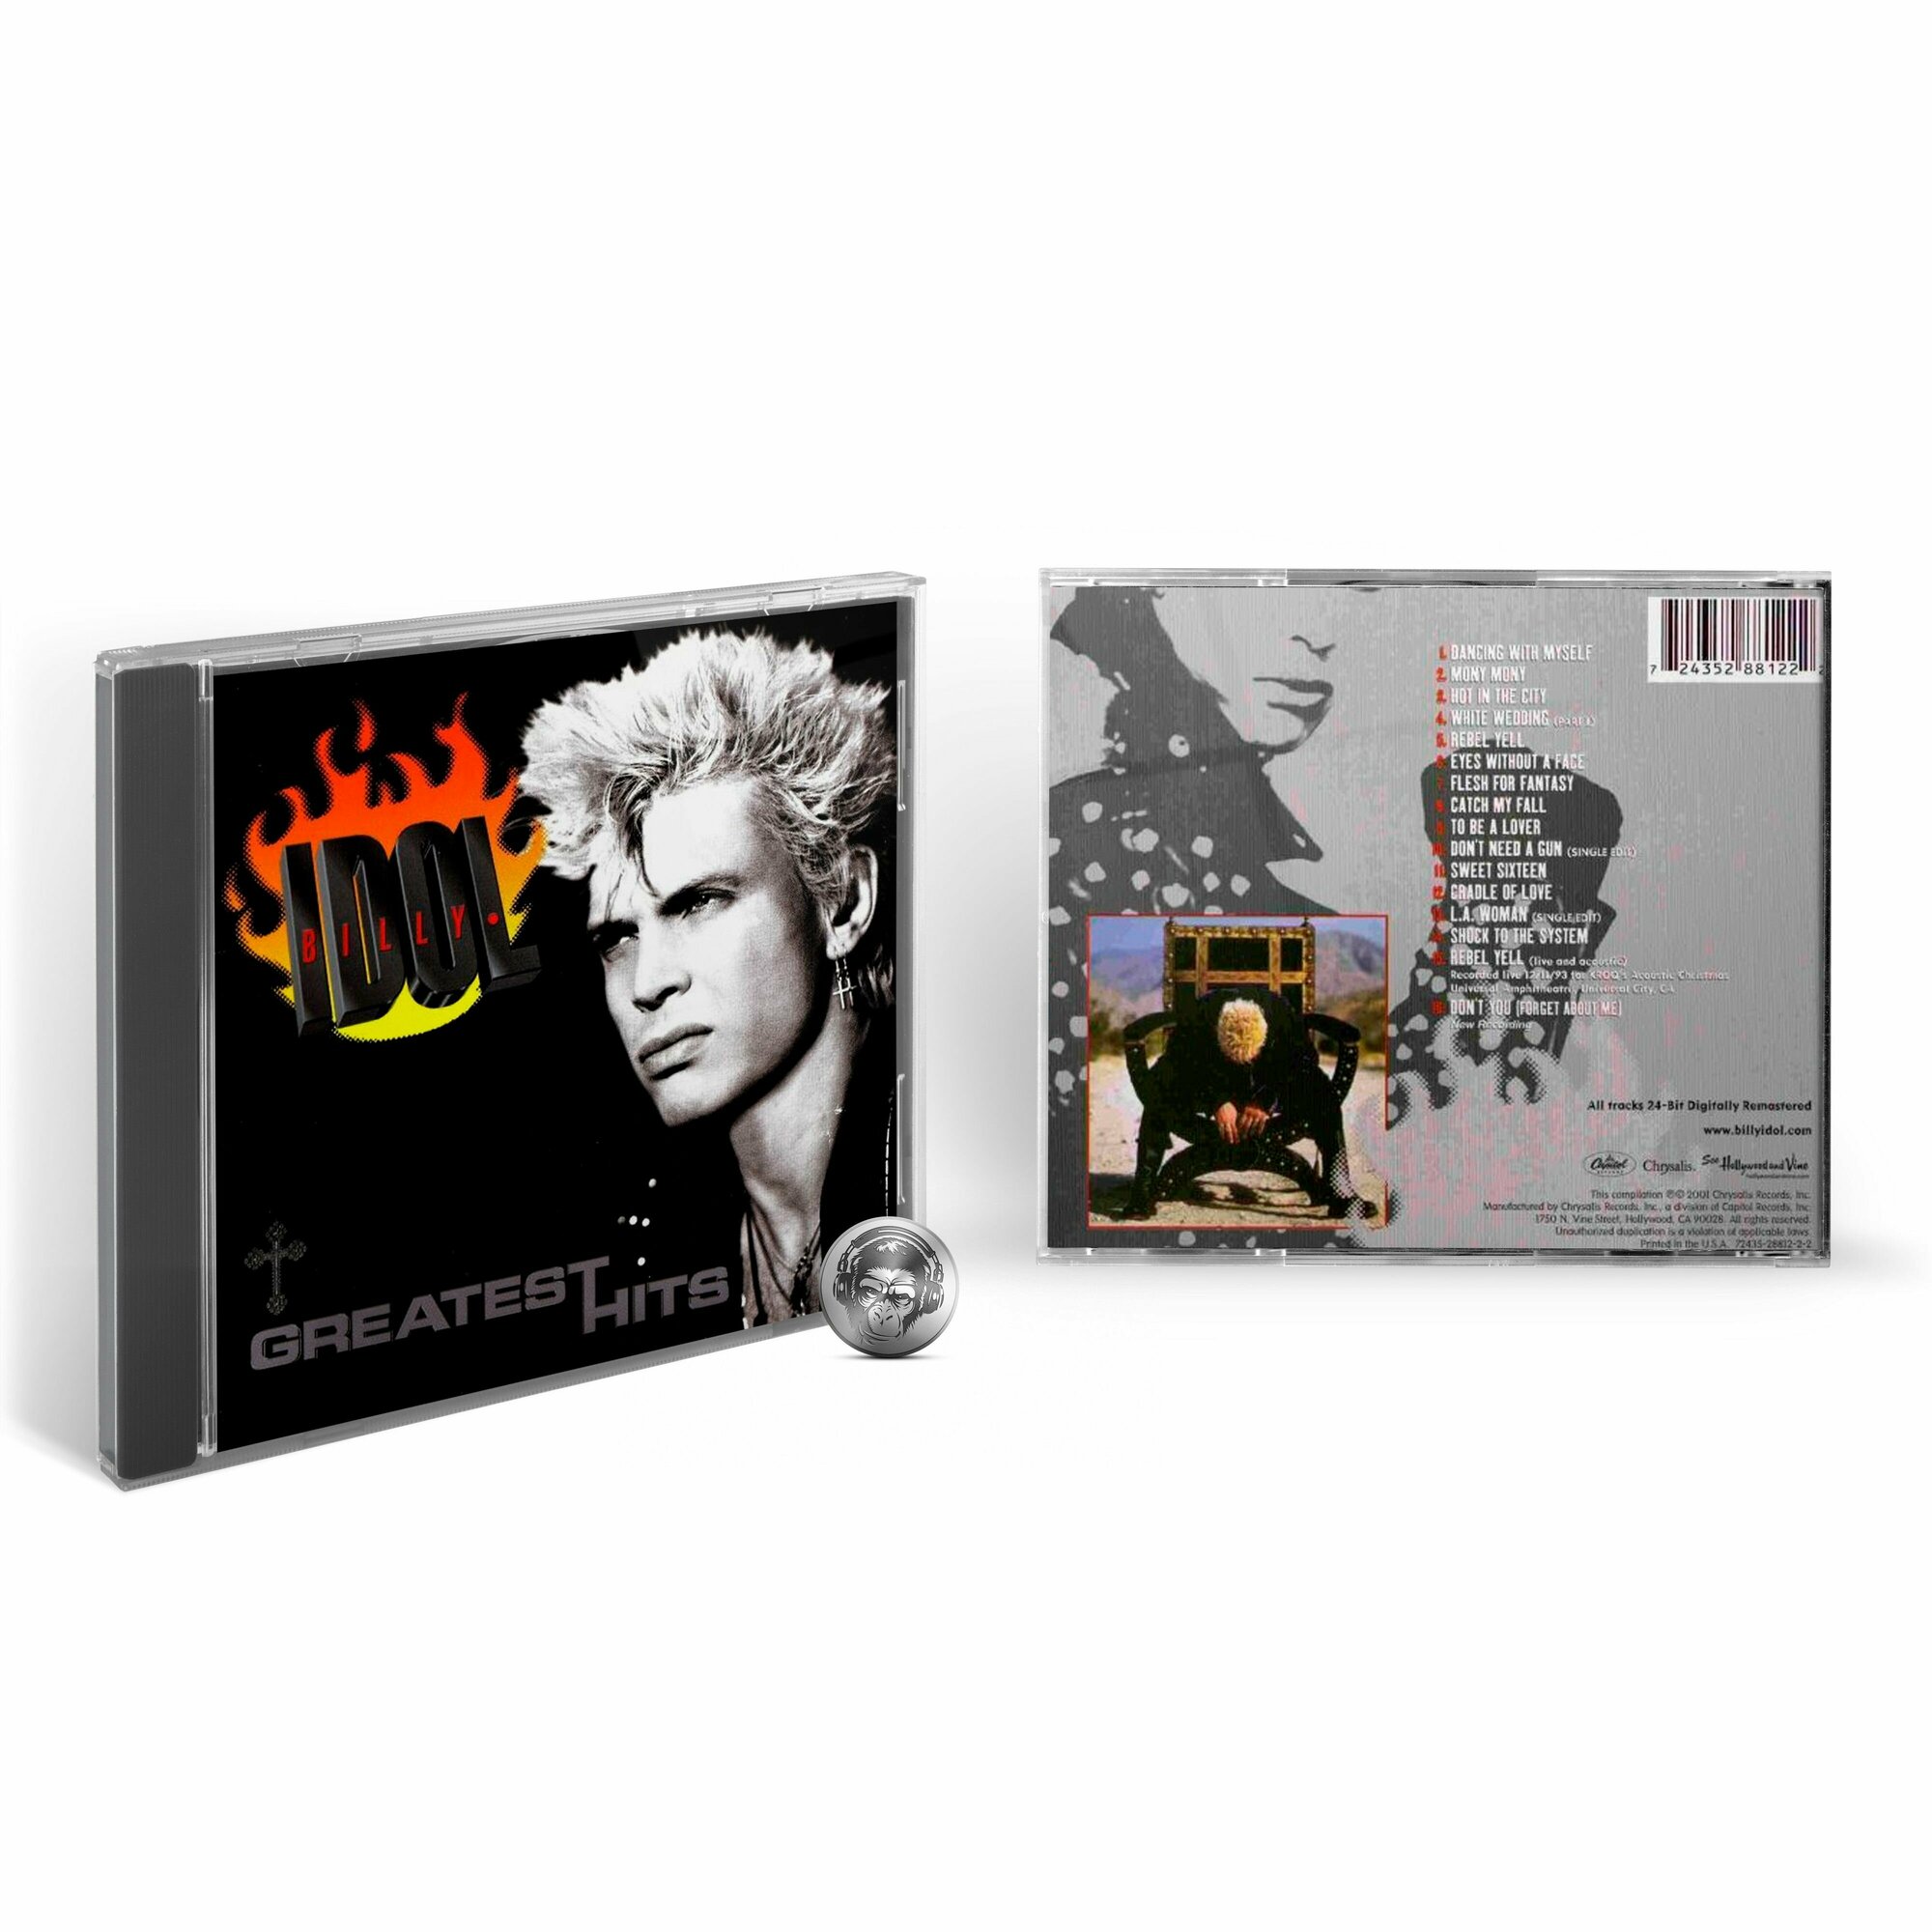 Billy Idol - Greatest Hits (1CD) 2001 Jewel Аудио диск